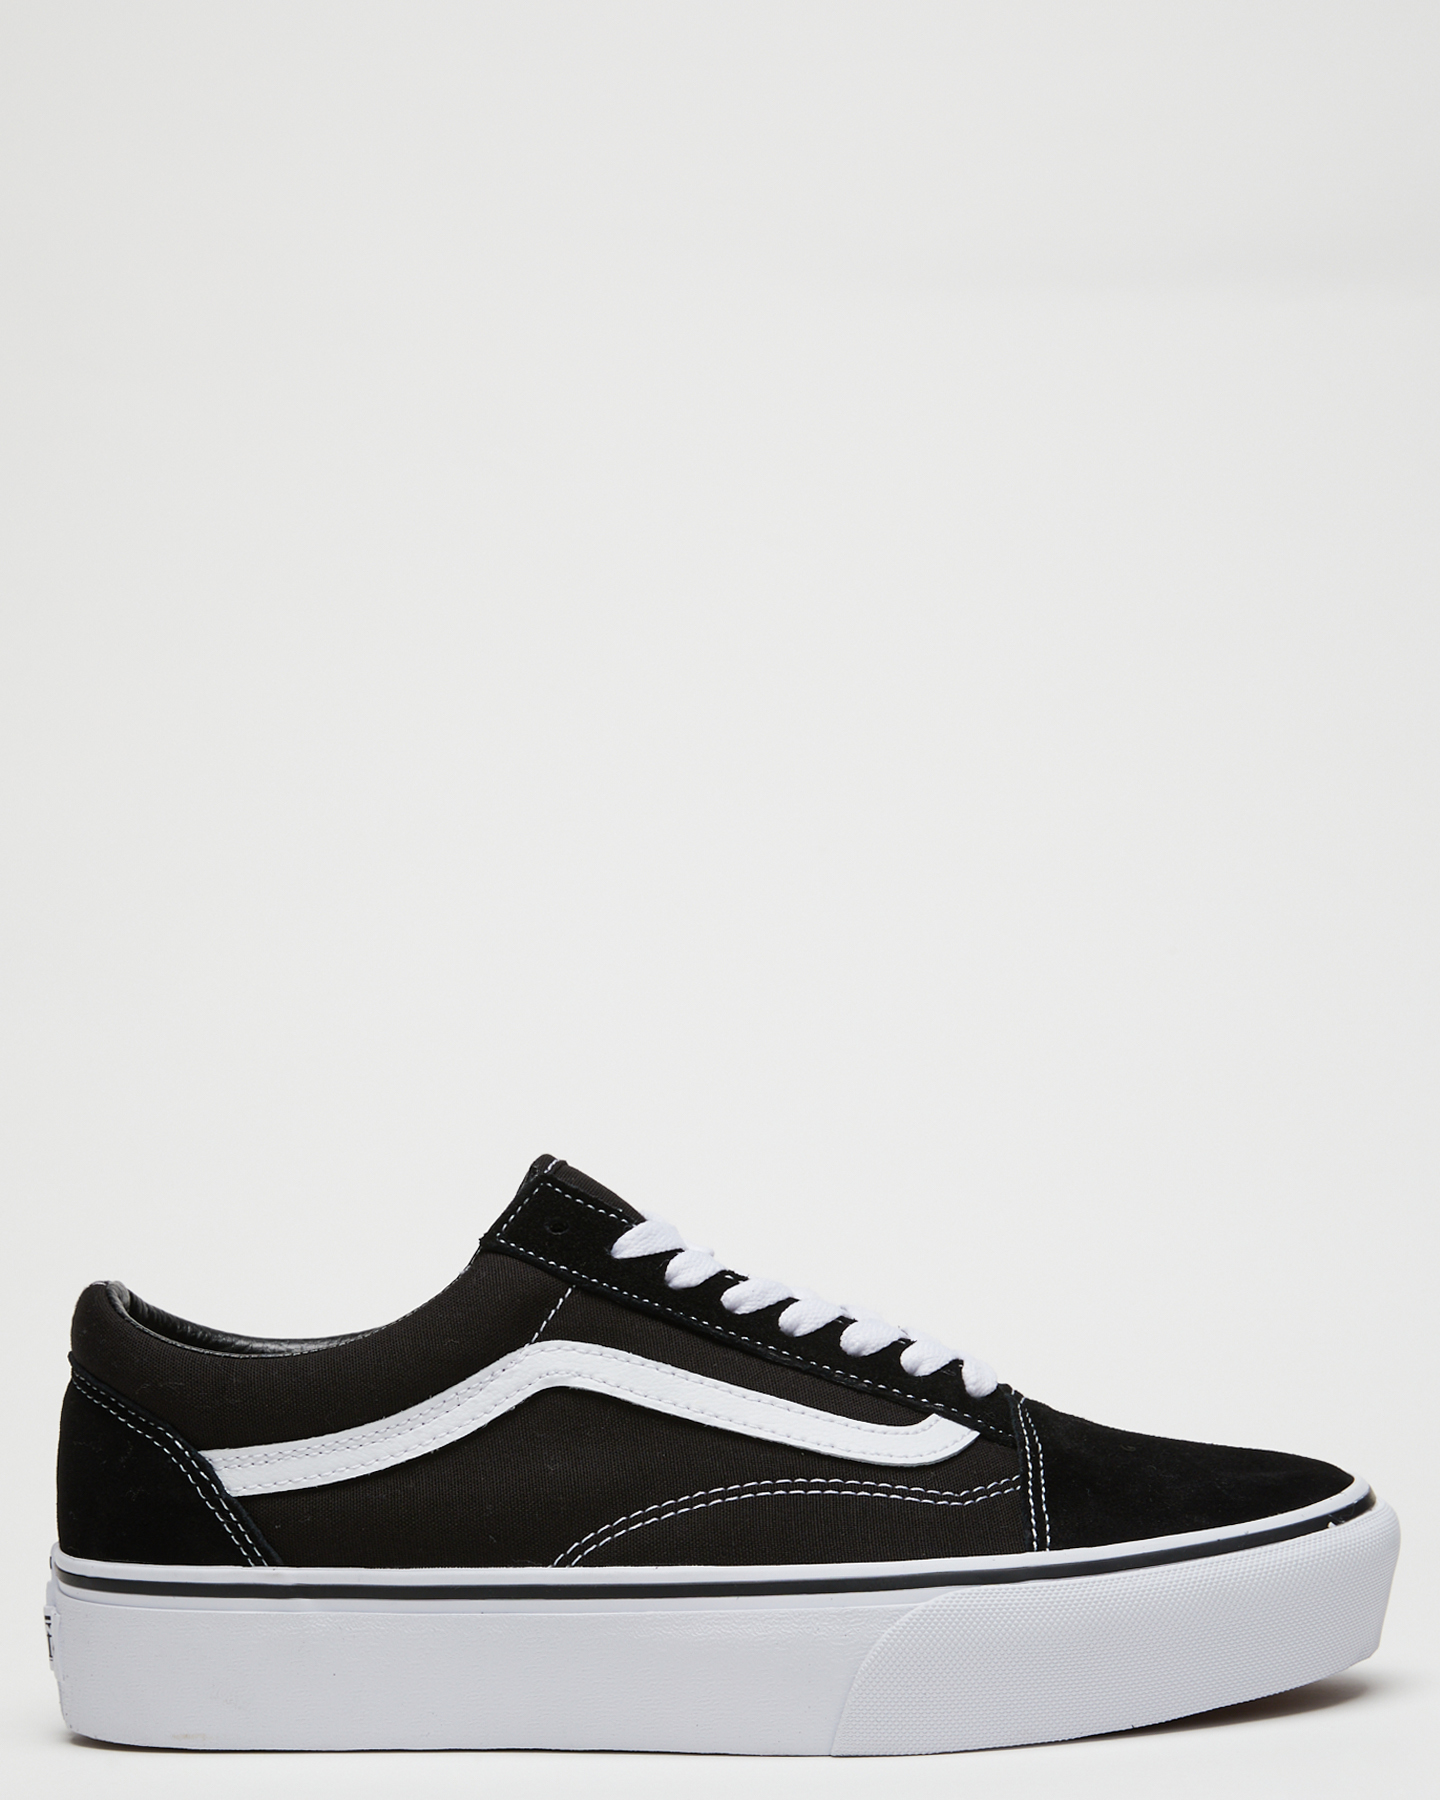 Vans Old Skool Sneaker - Black White